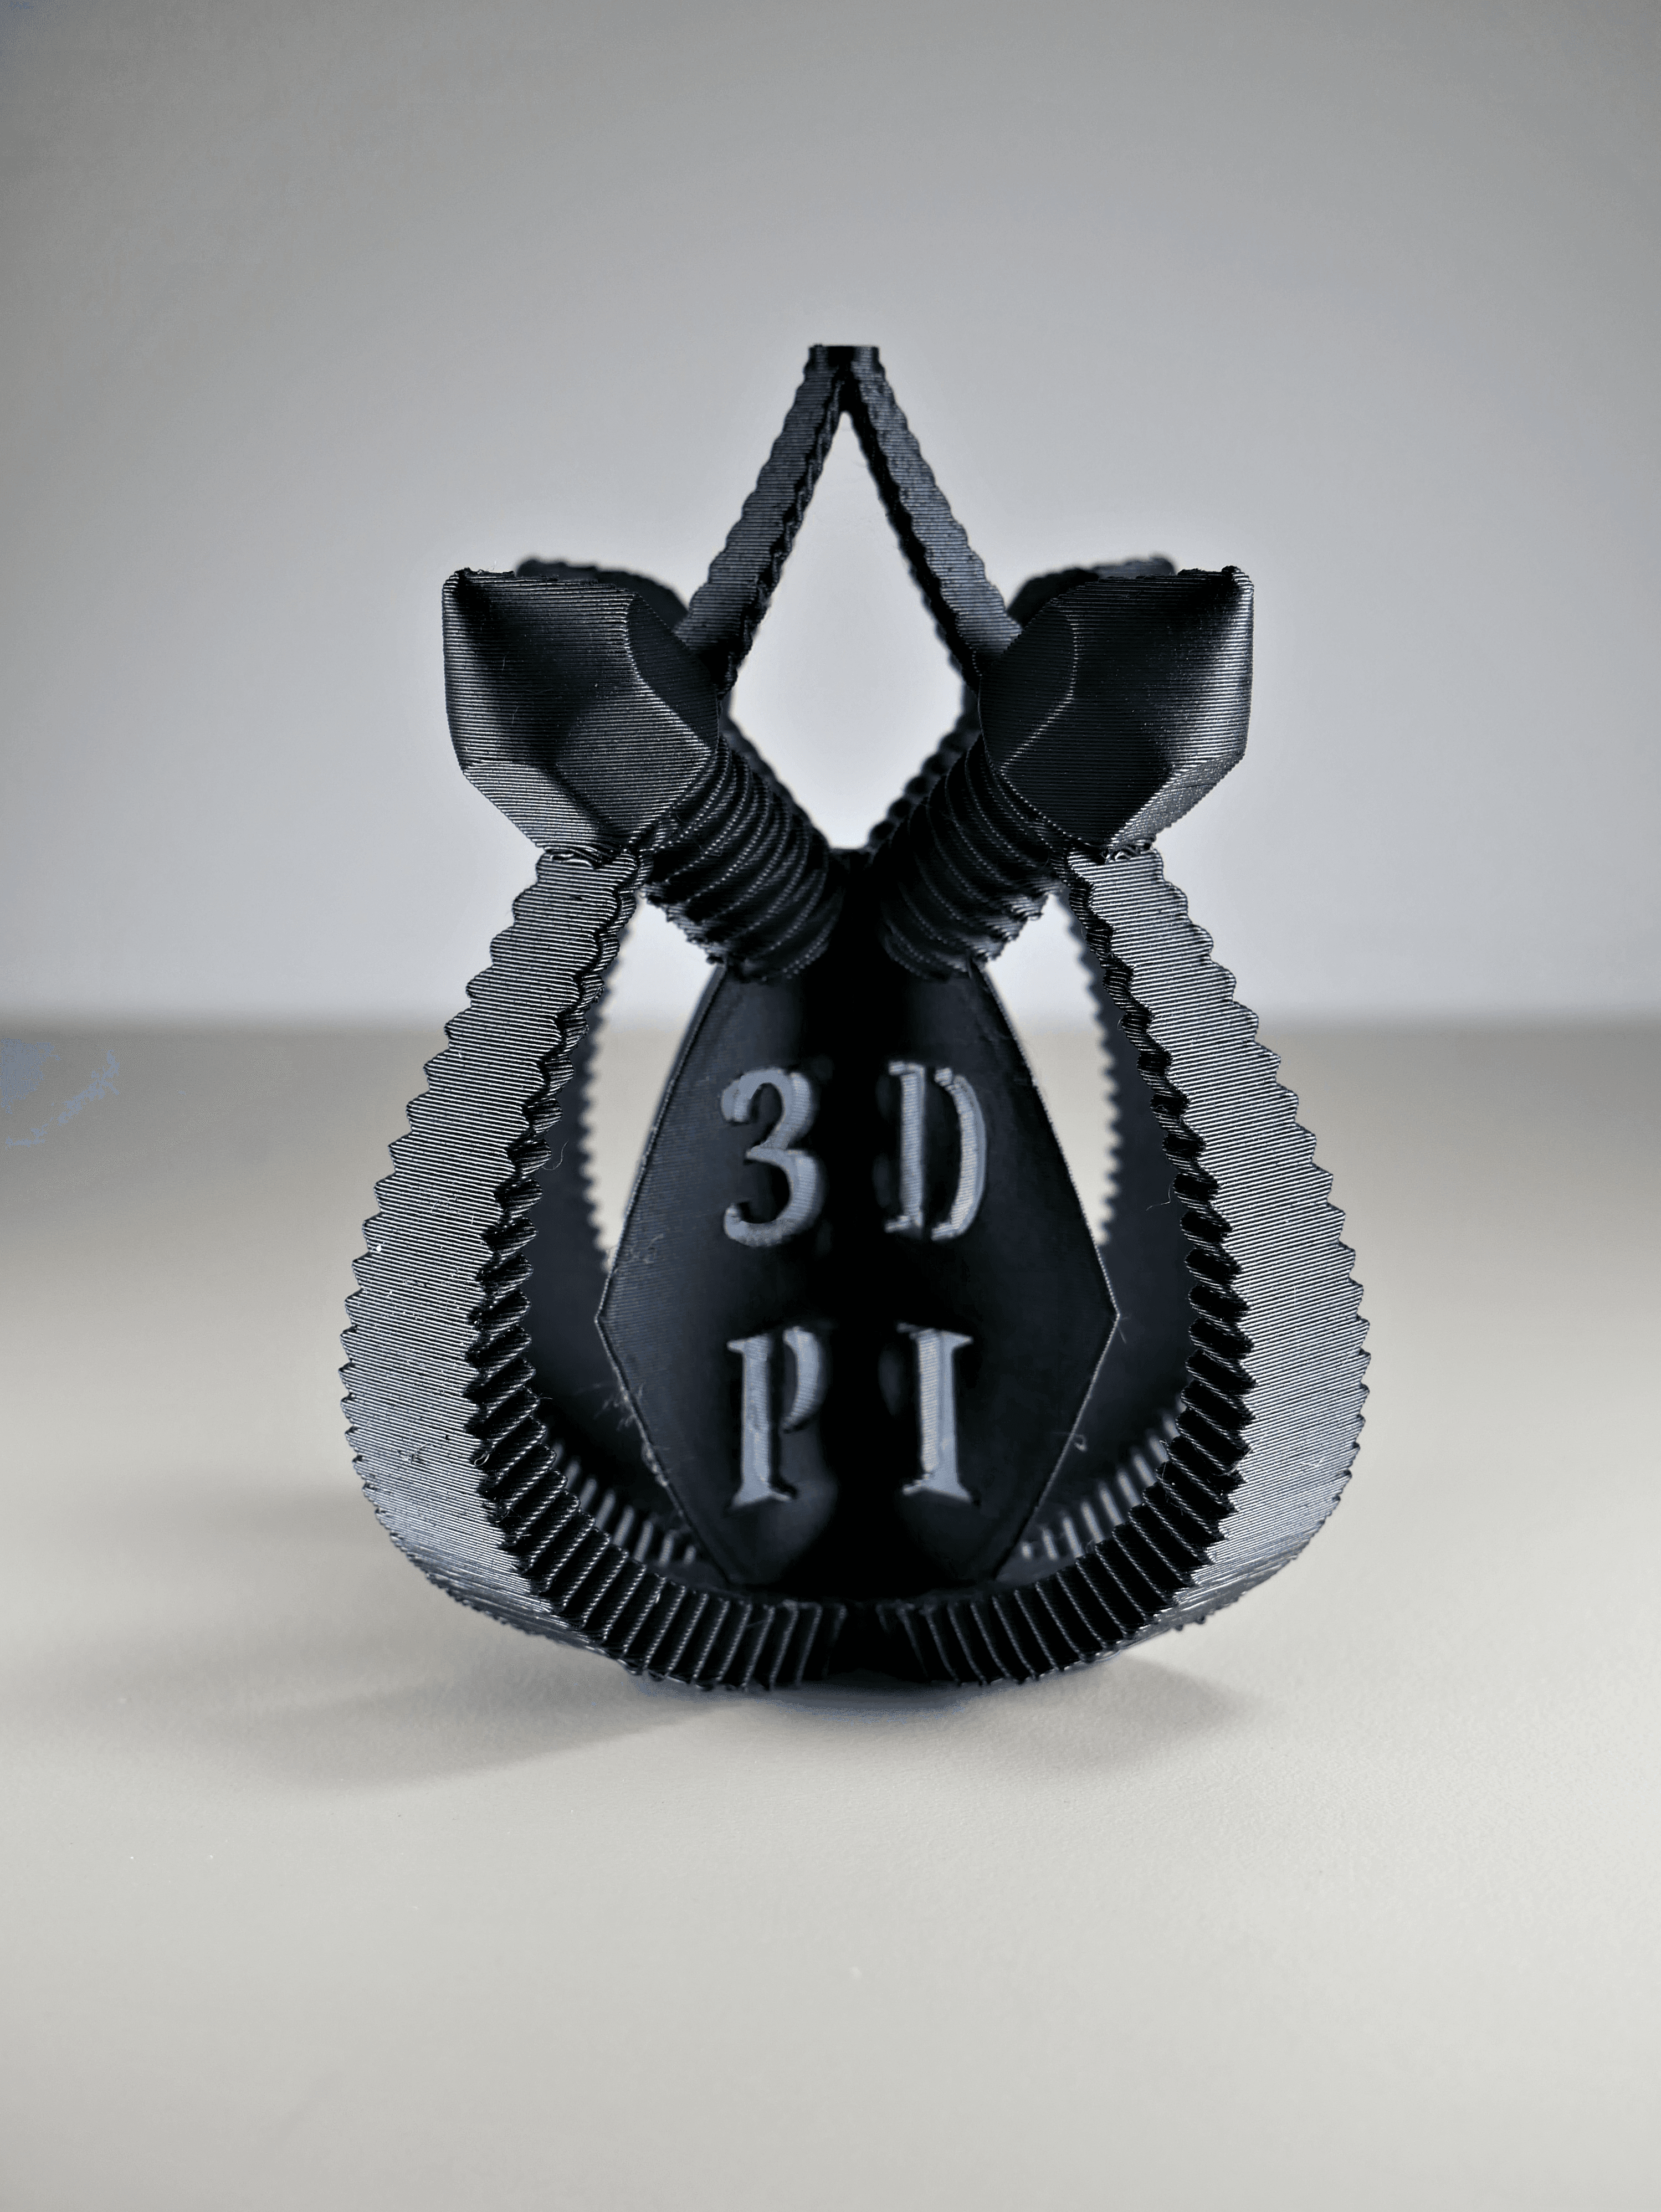 3DPI Awards Trophy 2023 Submission 2 3d model